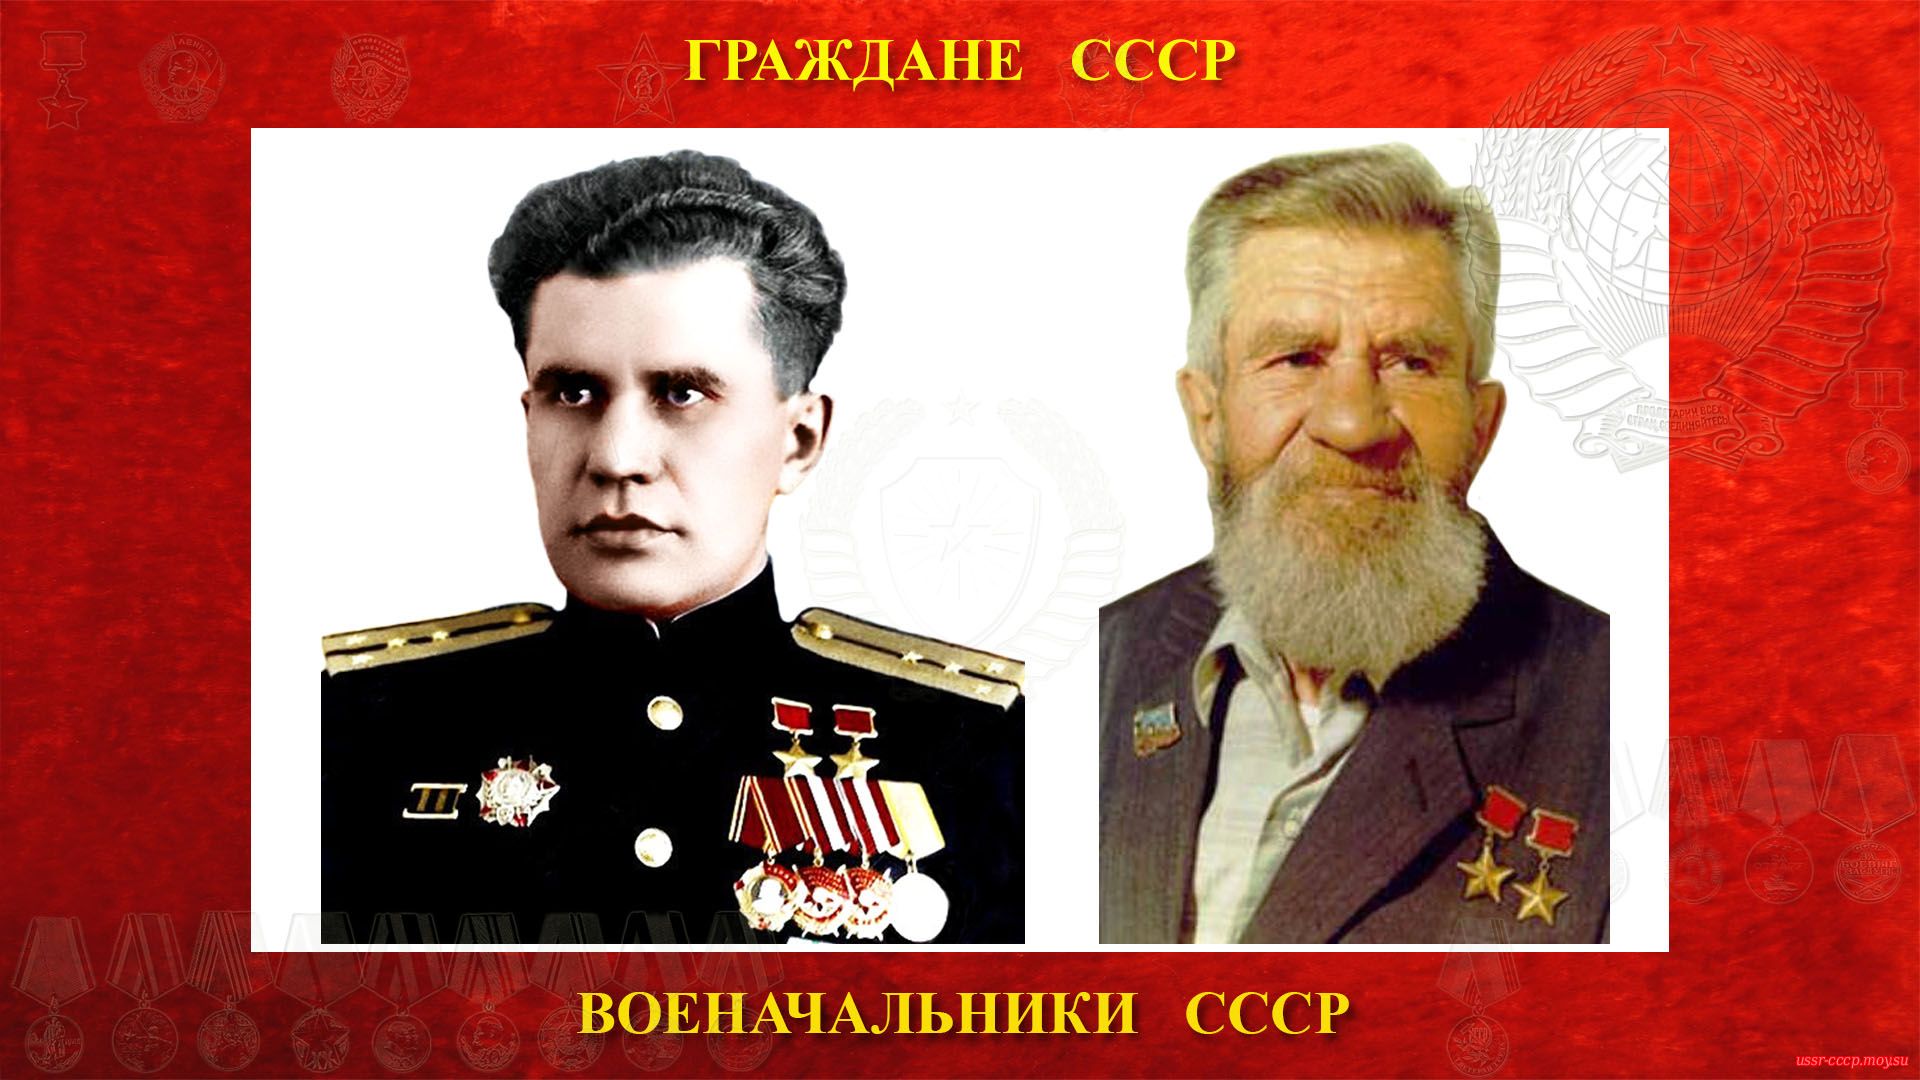 Леонов Виктор Николаевич — Советский военачальник СССР — Капитан 2-го ранга СССР (21.10.1916 — 07.10.2003)